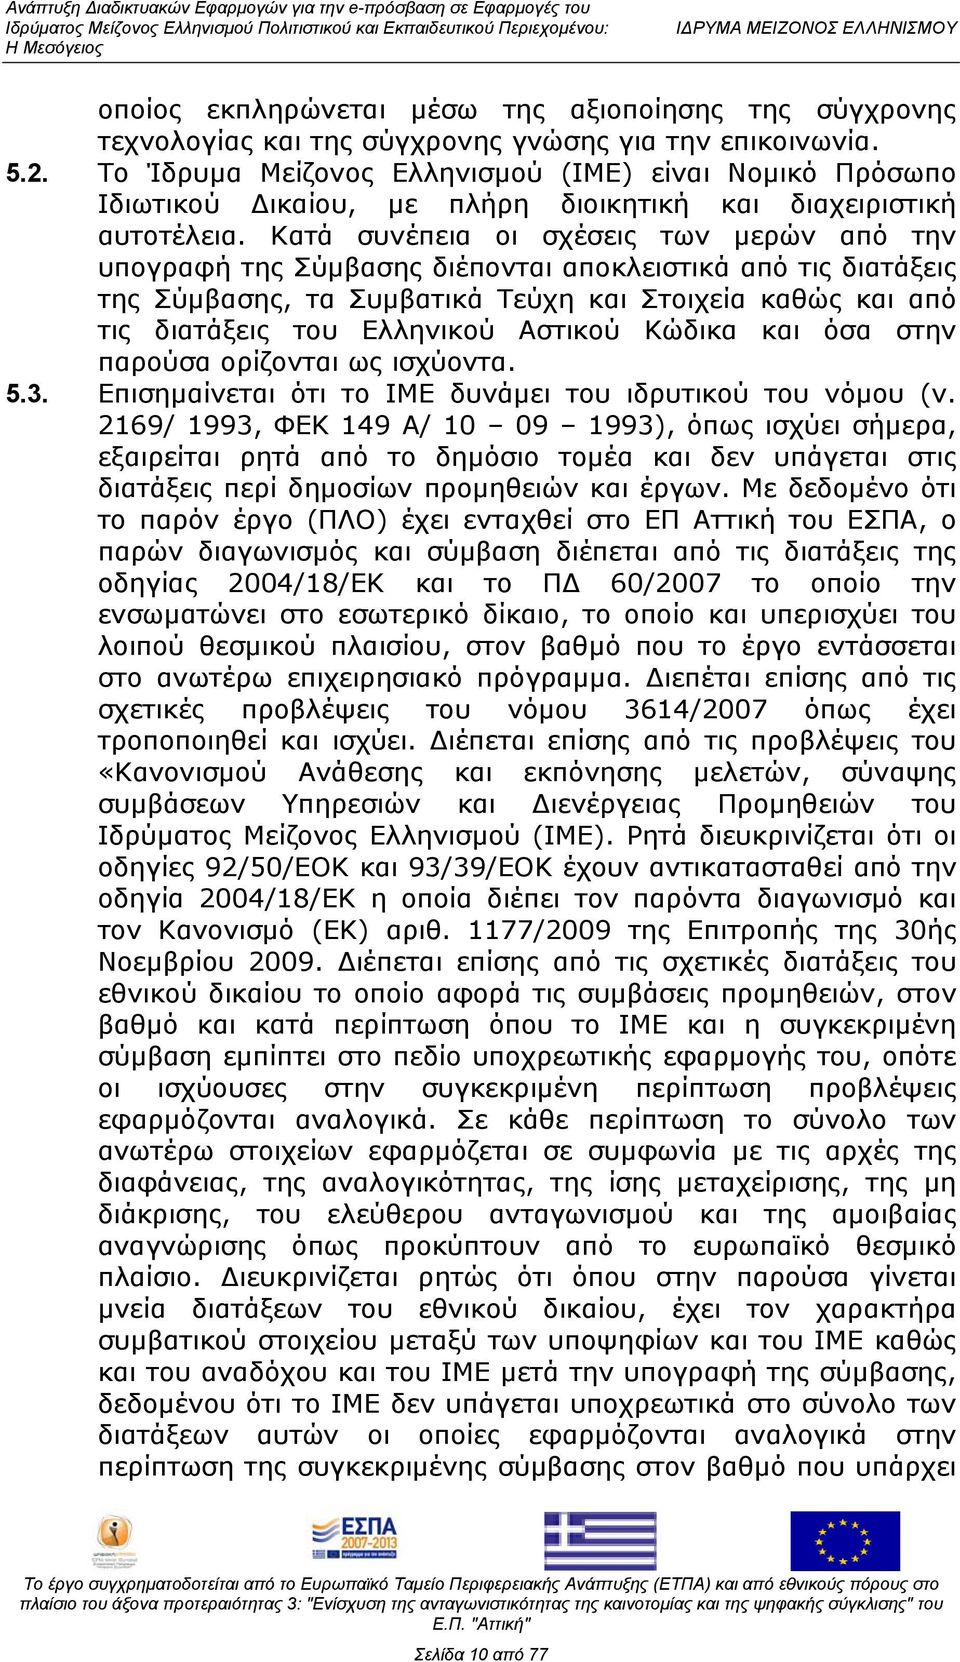 Κατά συνέπεια οι σχέσεις των μερών από την υπογραφή της Σύμβασης διέπονται αποκλειστικά από τις διατάξεις της Σύμβασης, τα Συμβατικά Τεύχη και Στοιχεία καθώς και από τις διατάξεις του Ελληνικού